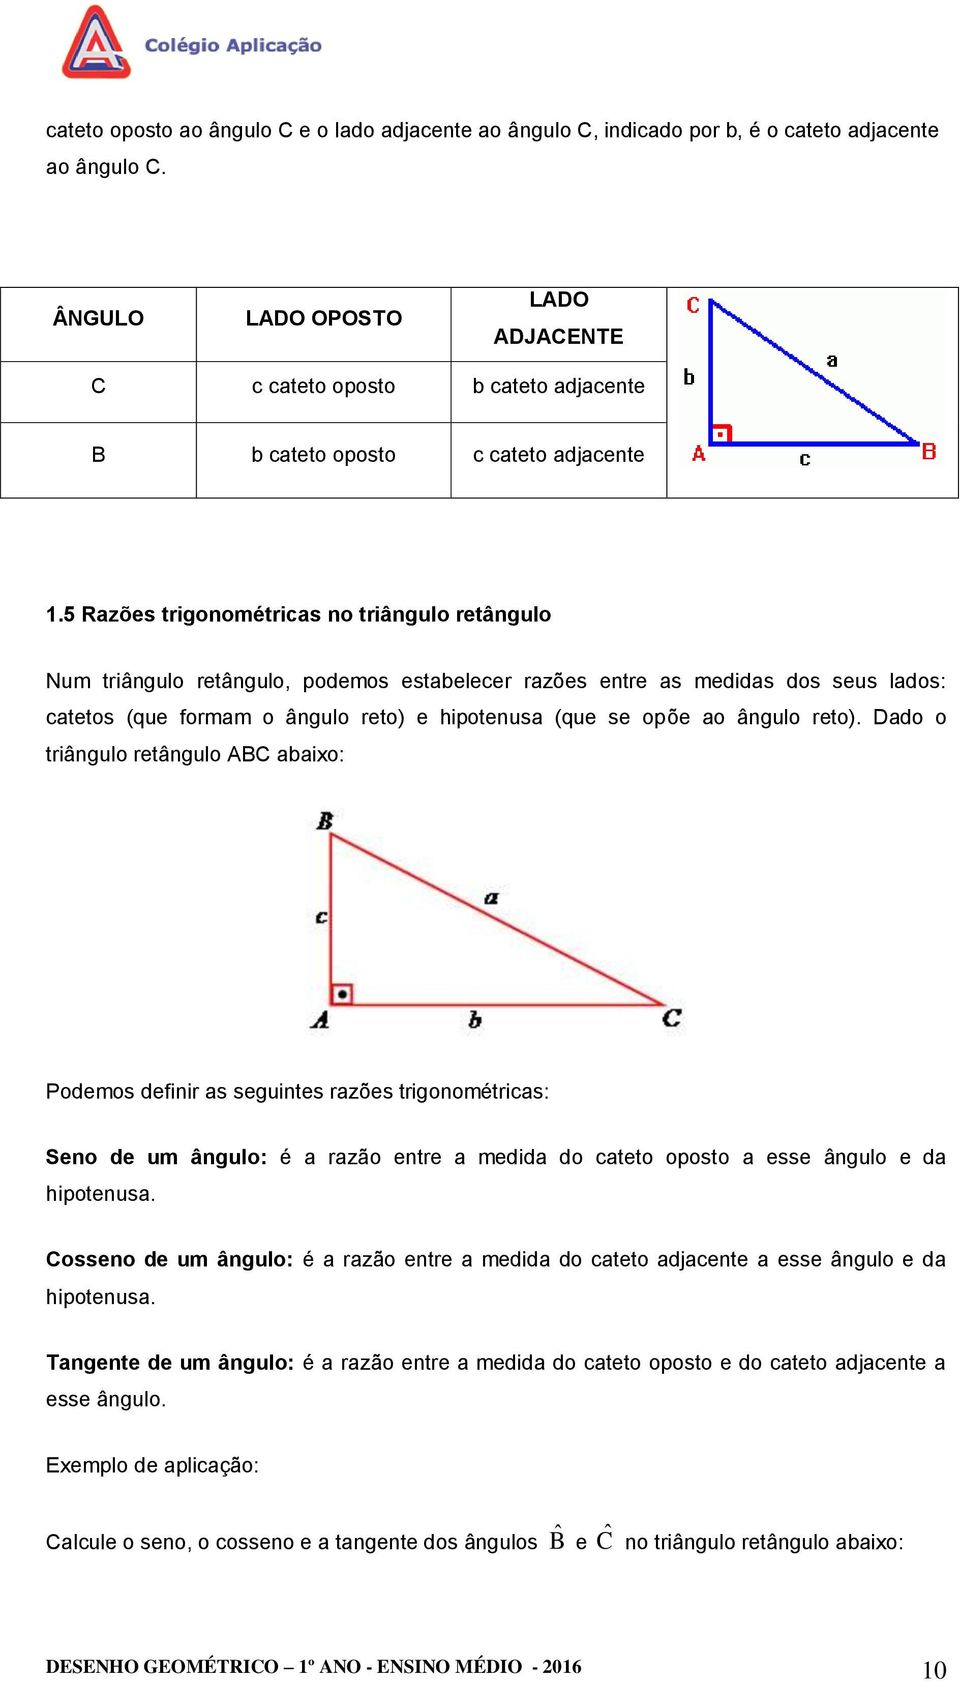 5 Razões trigonométricas no triângulo retângulo Num triângulo retângulo, podemos estabelecer razões entre as medidas dos seus lados: catetos (que formam o ângulo reto) e hipotenusa (que se opõe ao